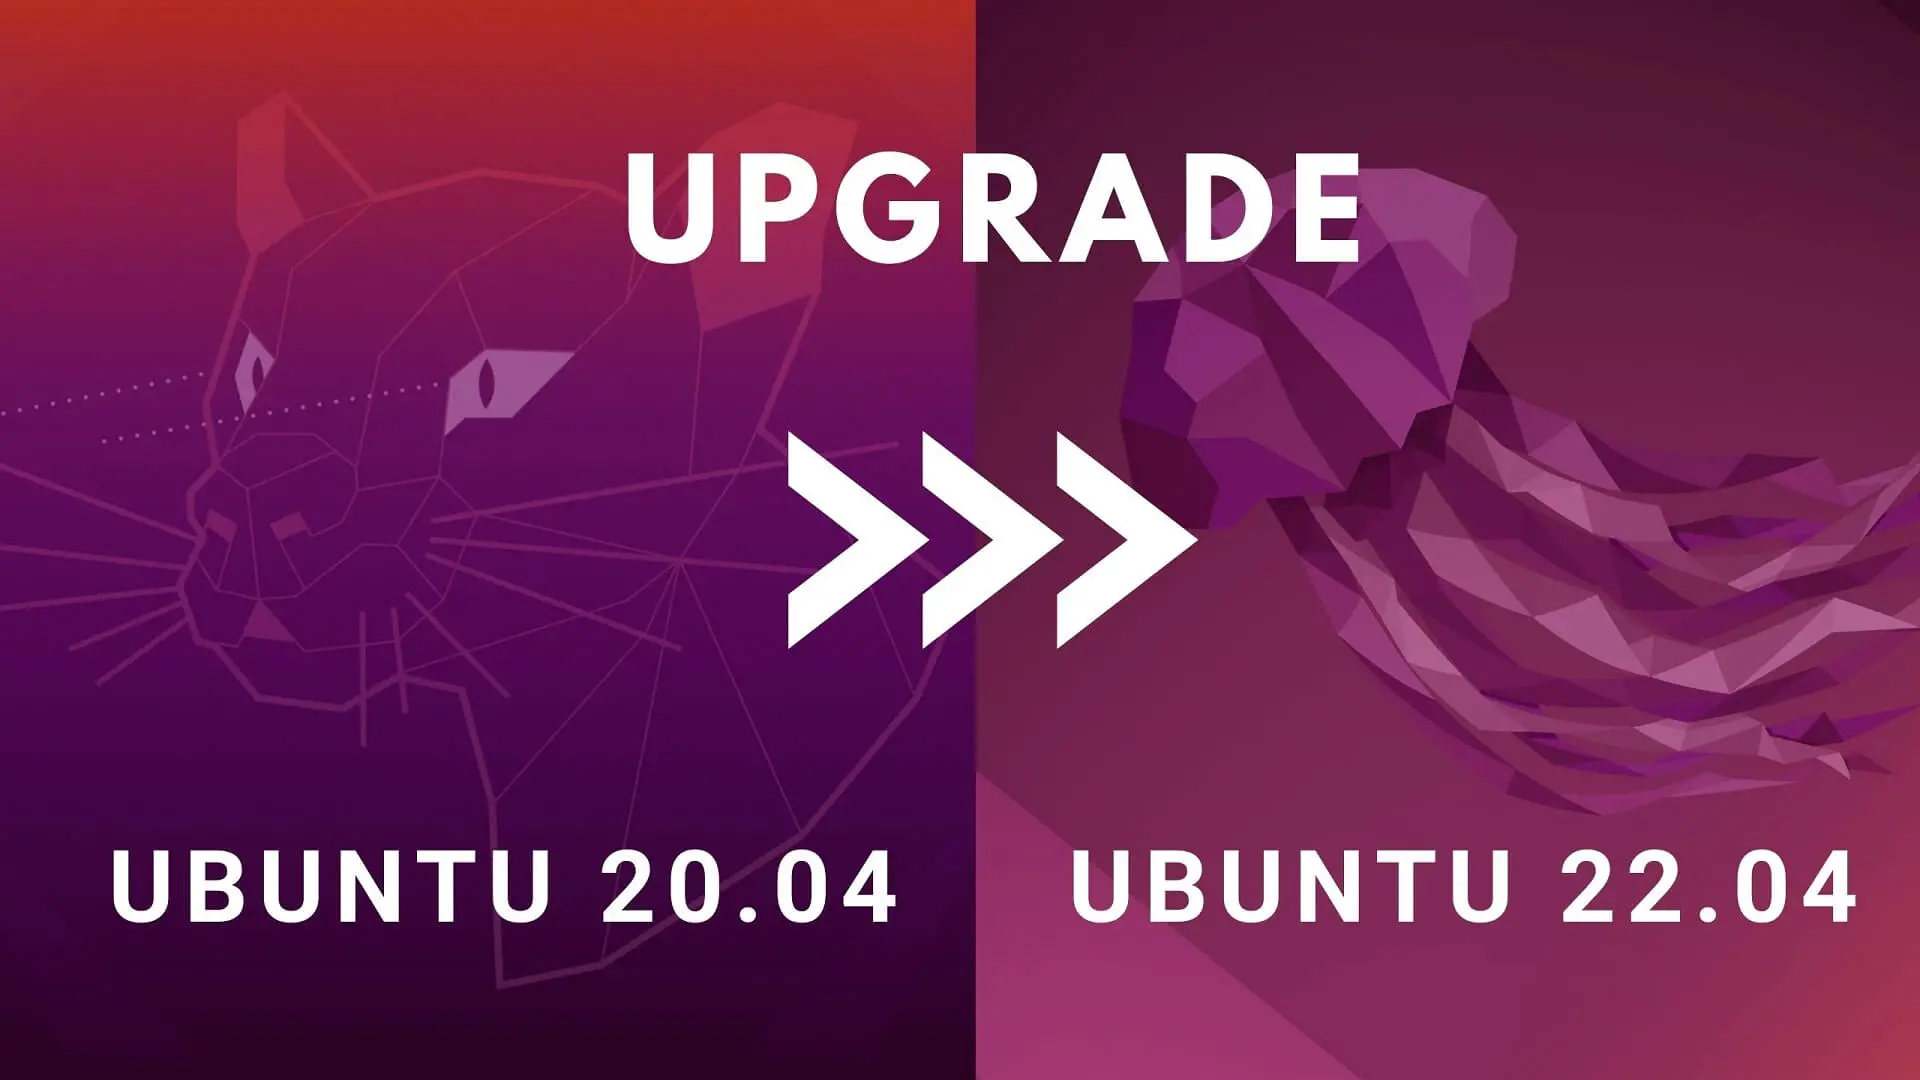 Ubuntu 20.04 to Ubuntu 22.04